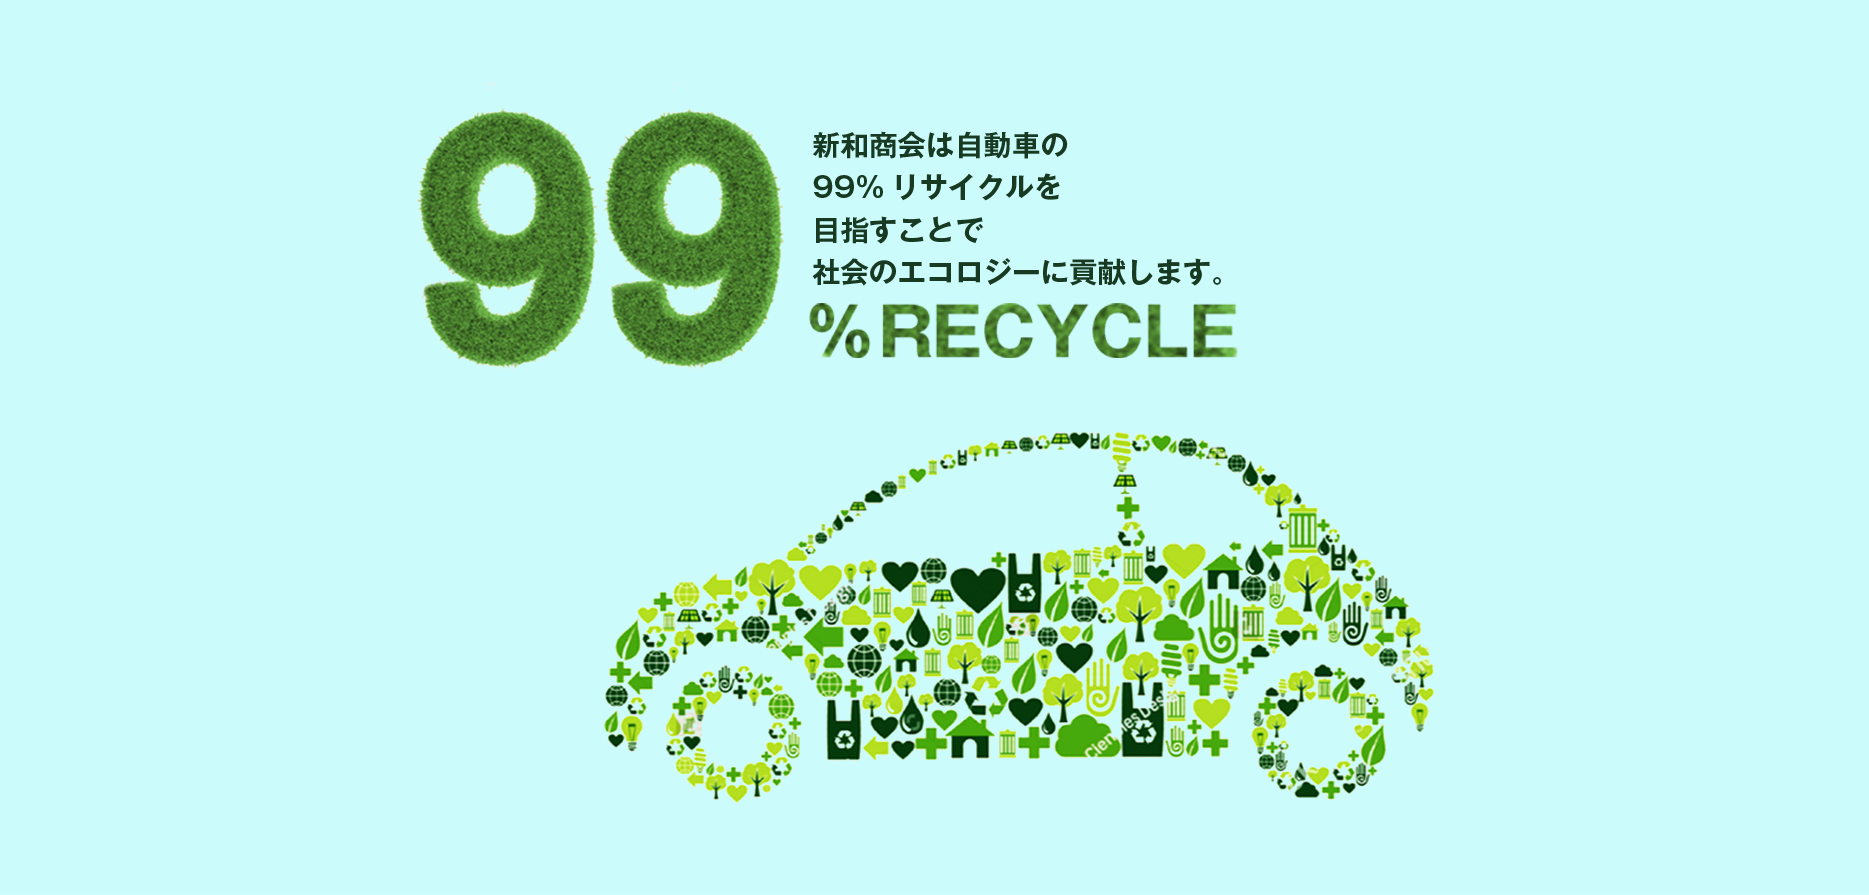 地球にやさしく、人にやさしく、車にやさしく。わたしたちは、99％エコロジーに取り組んでいます。